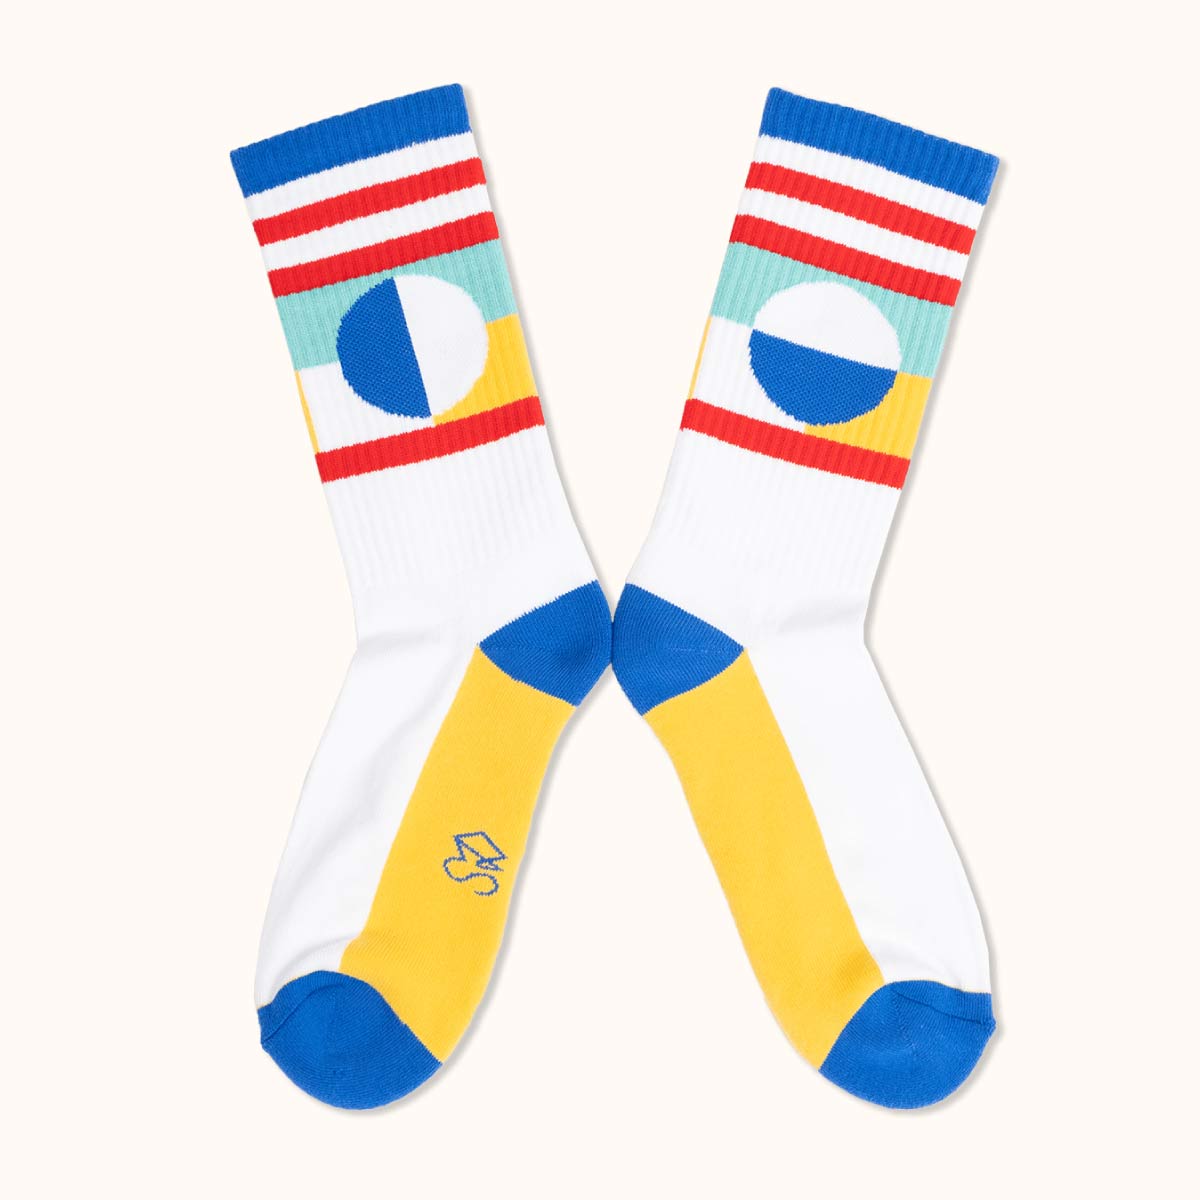 Chaussettes de sport Séverine Dietrich packshot jaune rouge bleu et blanche